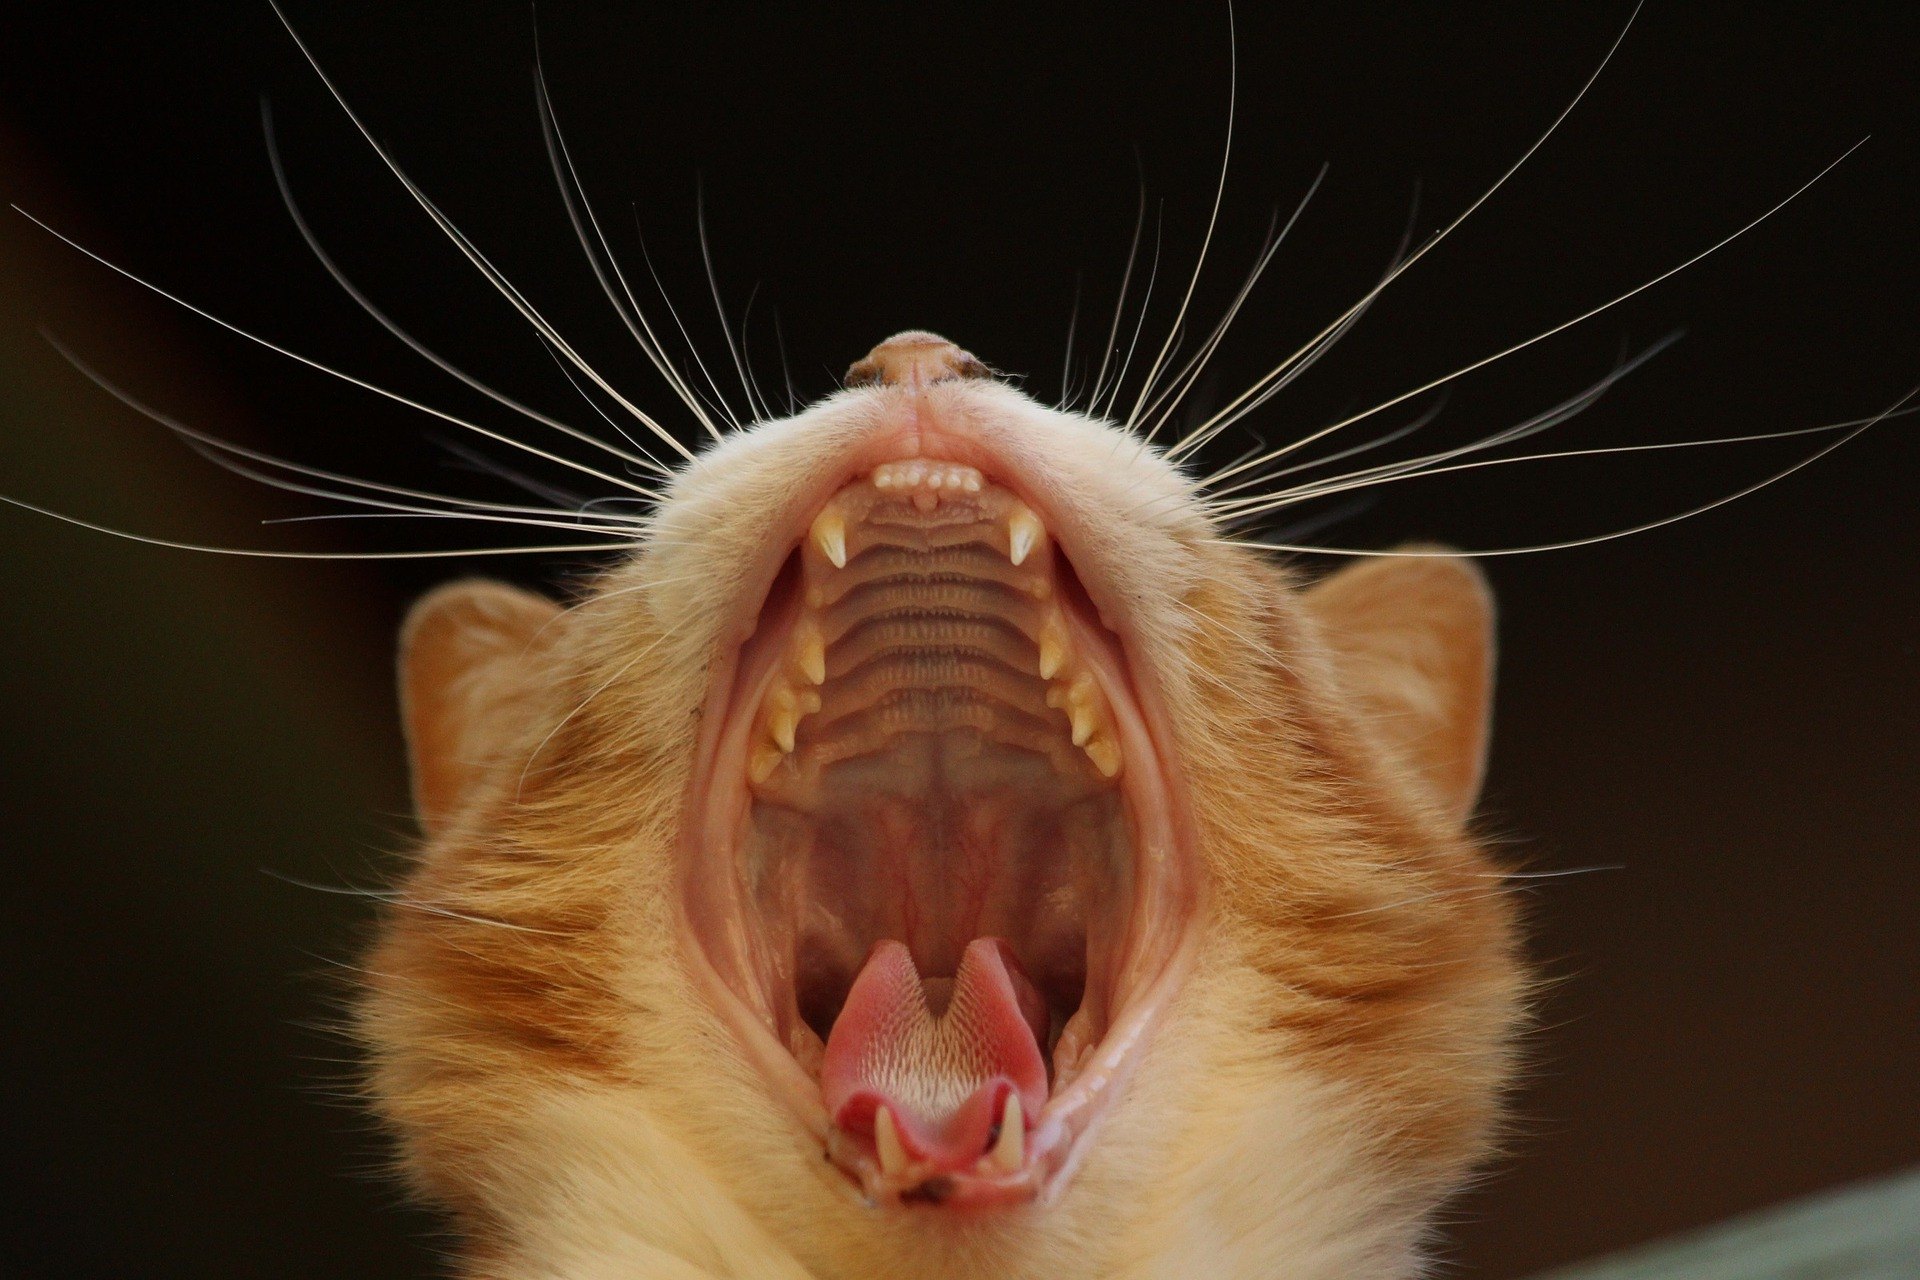 Zahnfleischentzündung bei einer Katze wird häufig durch Zahnsteinbildung verursacht, kann jedoch das Ergebnis schwerer Krankheiten sein.